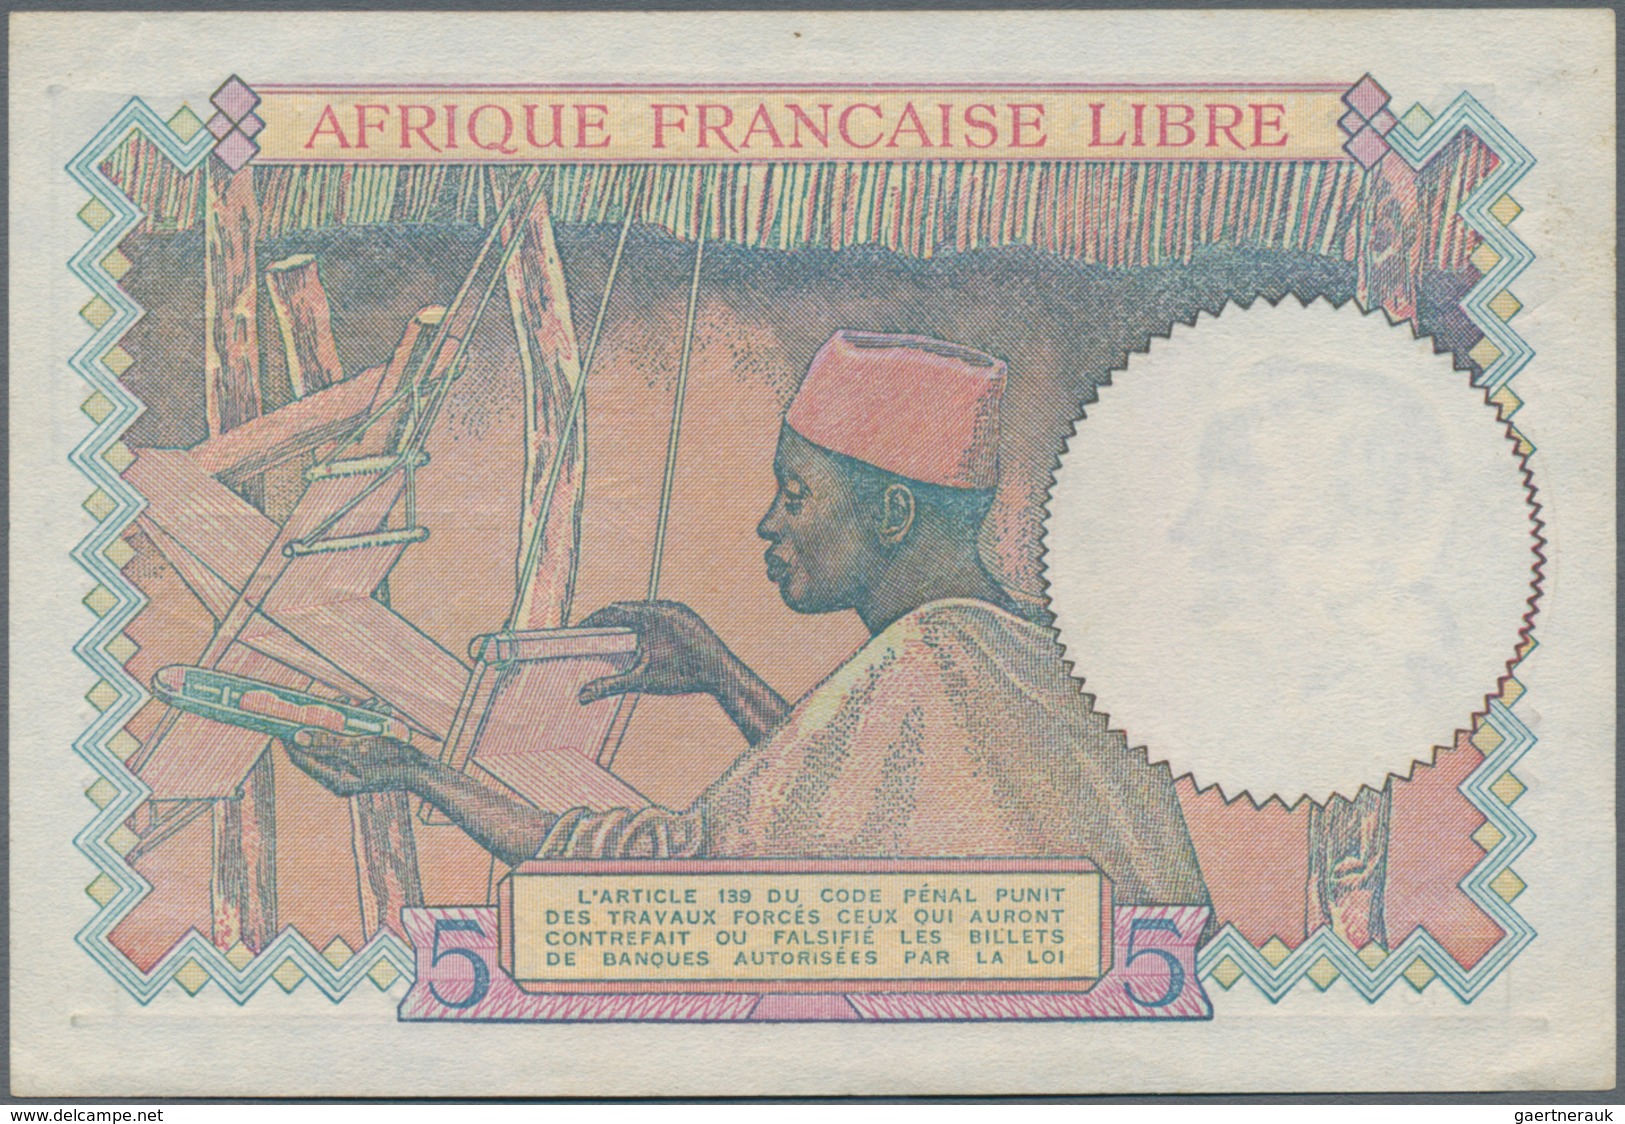 French Equatorial Africa / Französisch-Äquatorialafrika: Afrique Française Libre 5 Francs ND(1941), - Guinea Ecuatorial